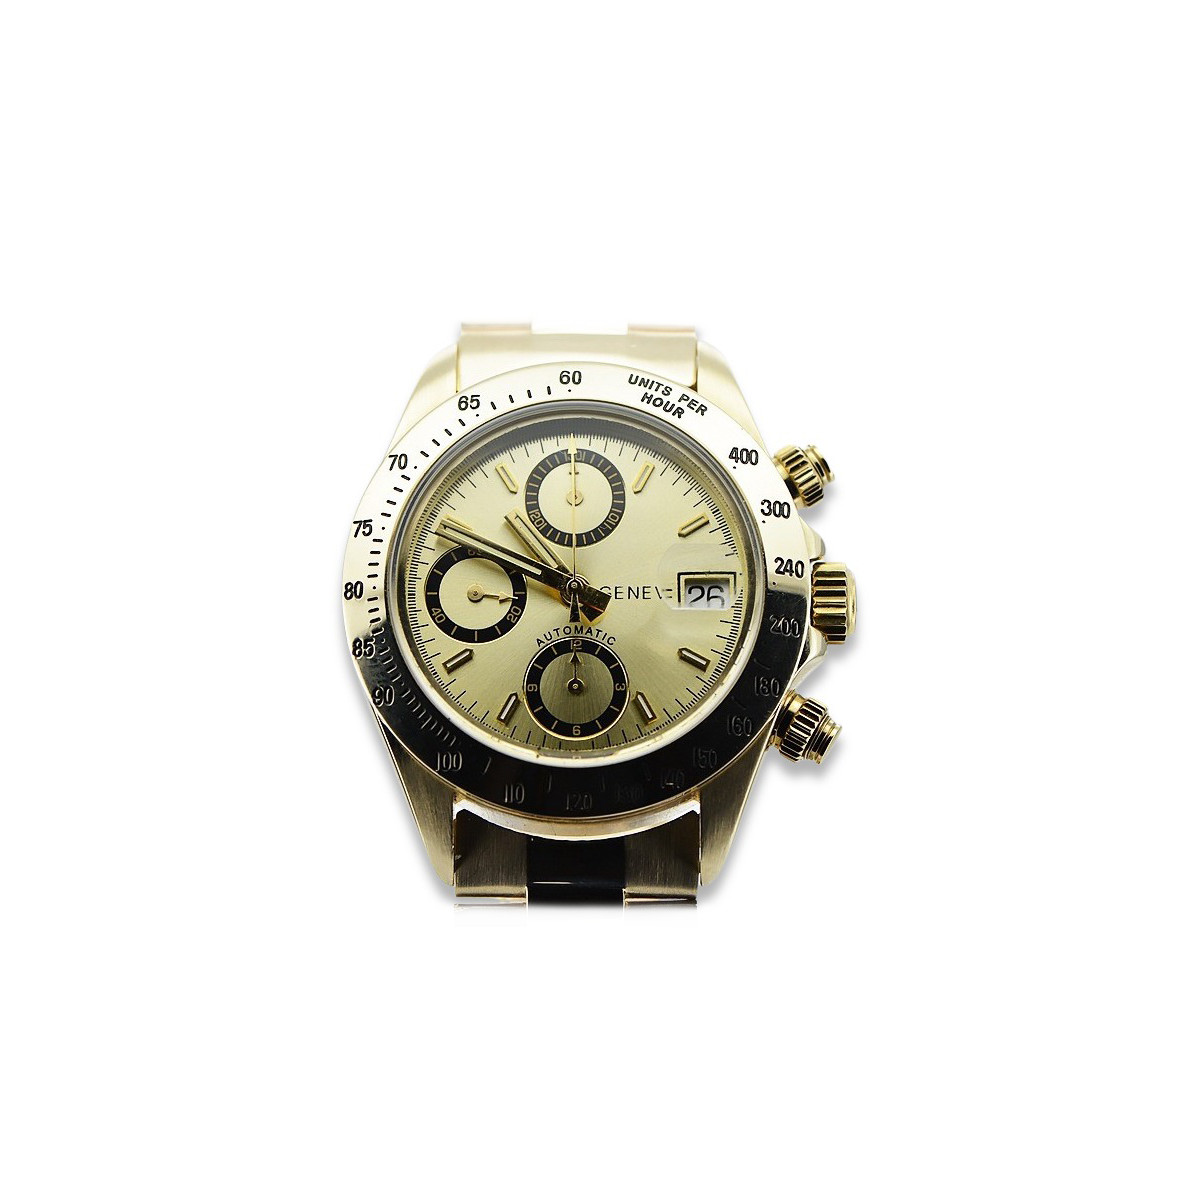 Złoty zegarek męski 14k 585 Geneve styl Rolex mw041y